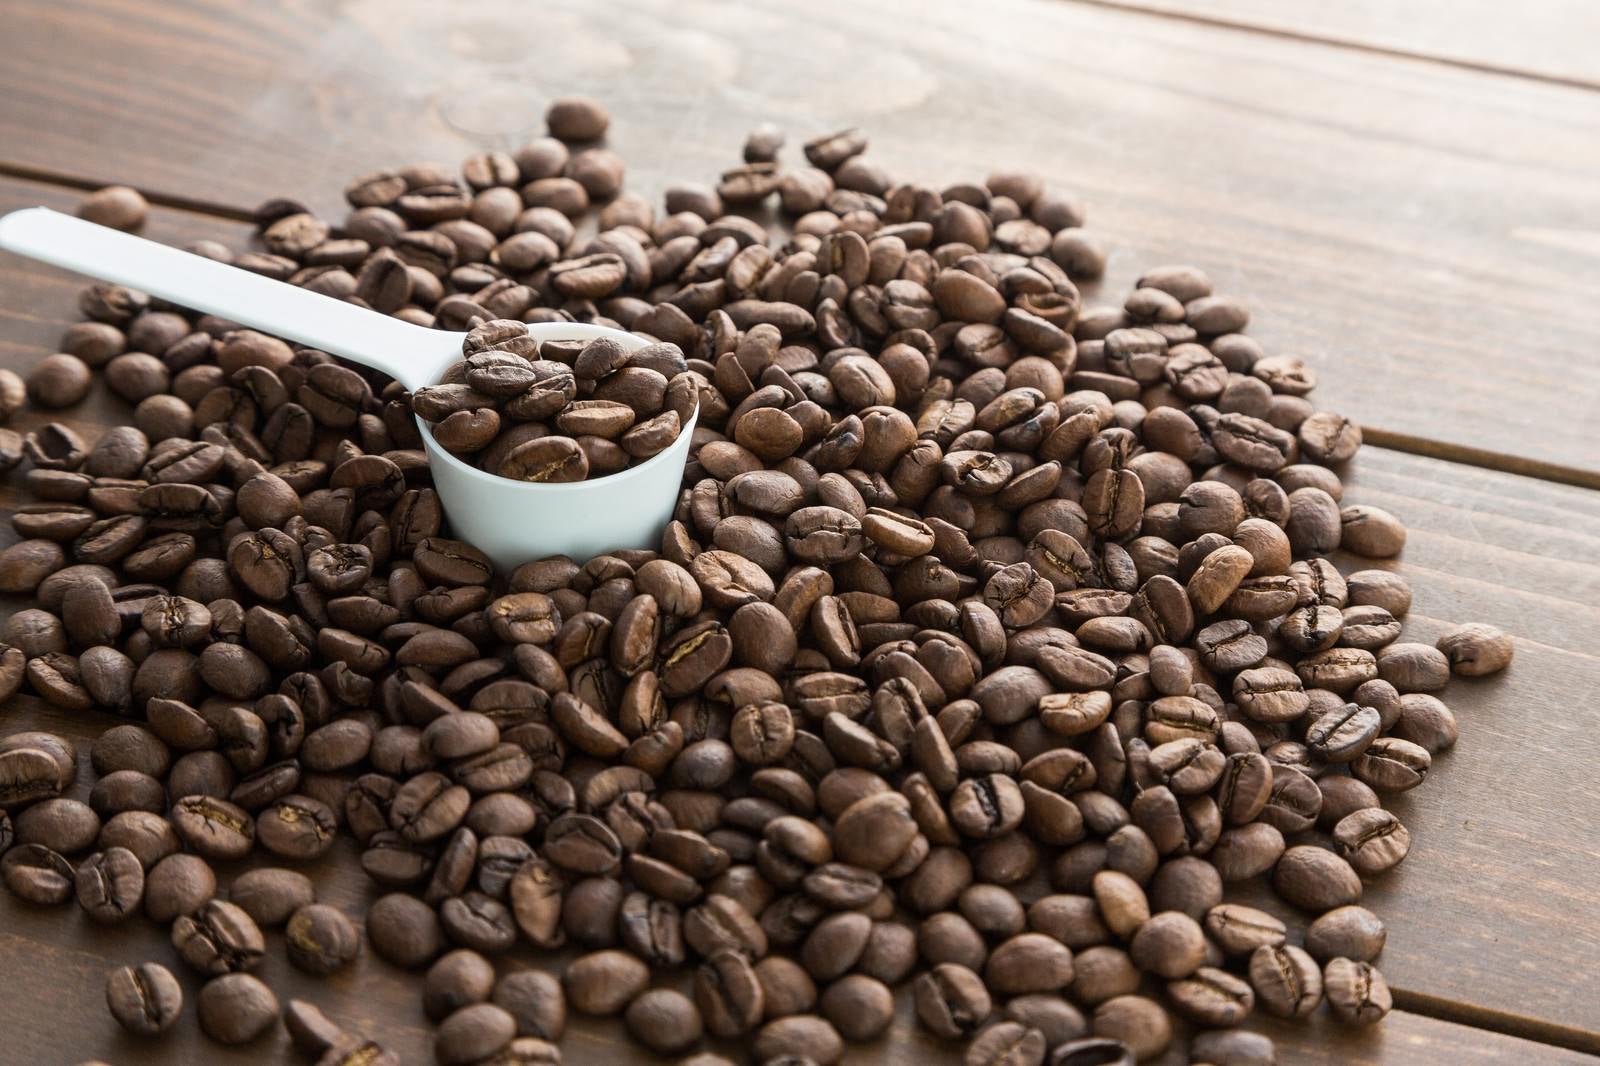 「計量スプーンとコーヒー豆」の写真